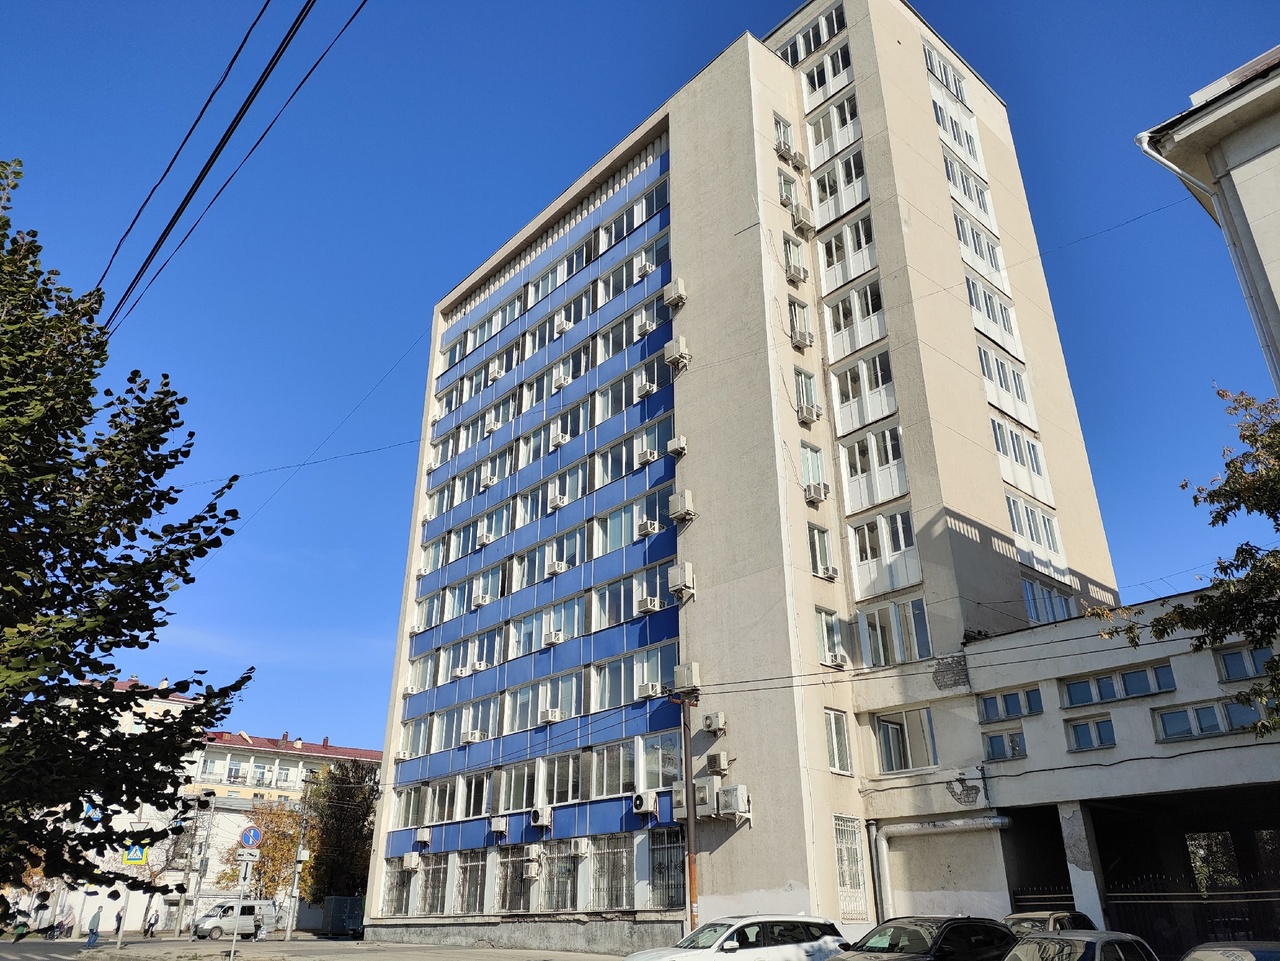 Здание Самарского института «Гипровостокнефть» взяли под охрану